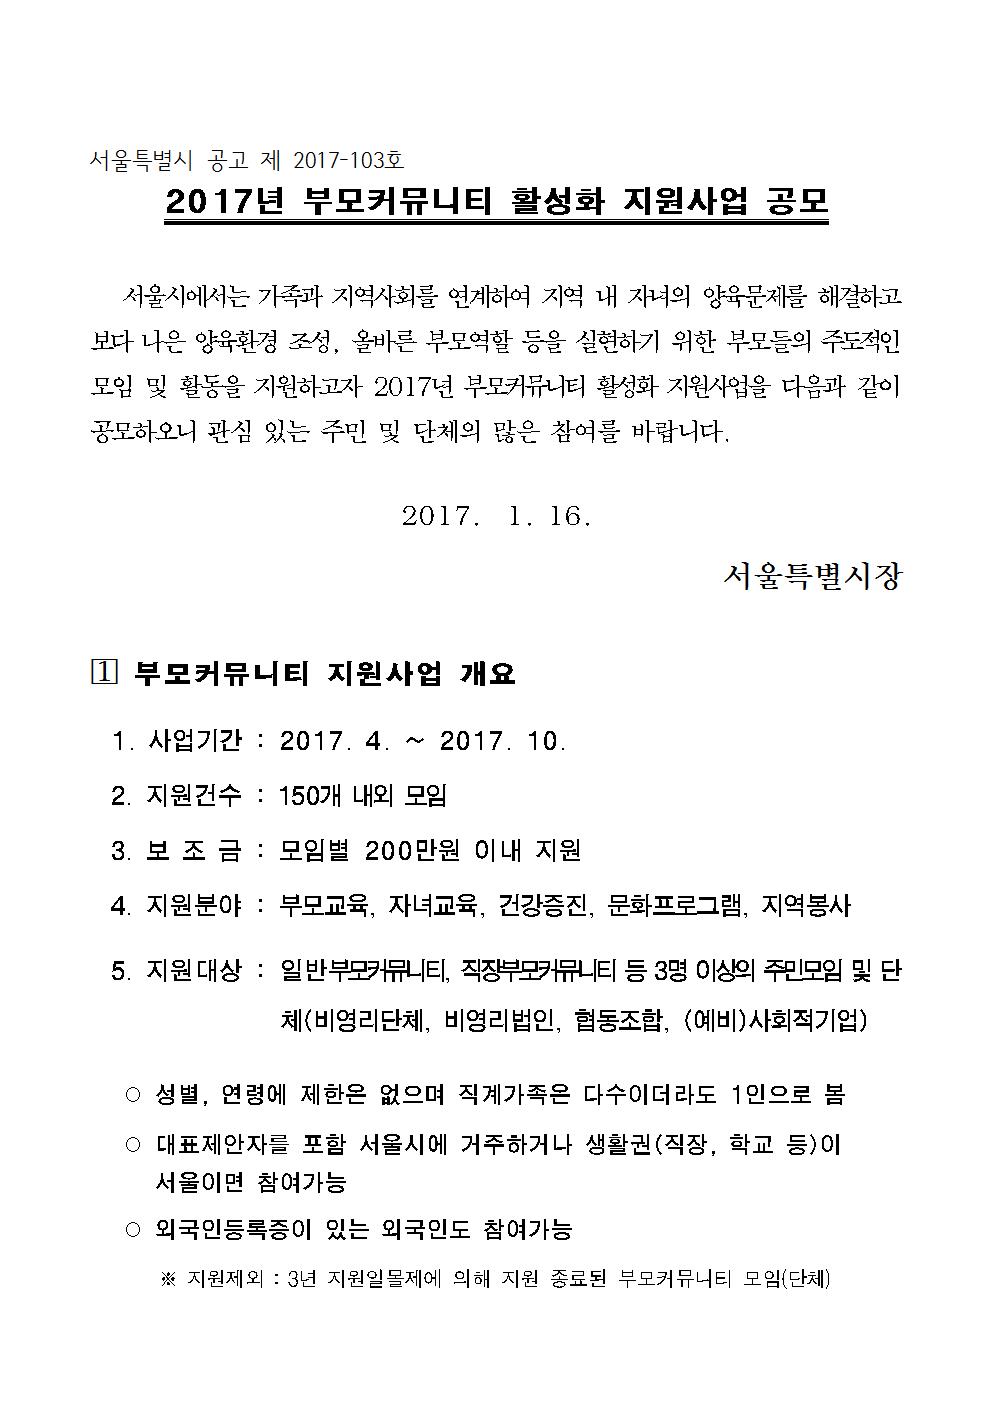 2017년 부모커뮤니티활성화지원사업 공고문001.jpg